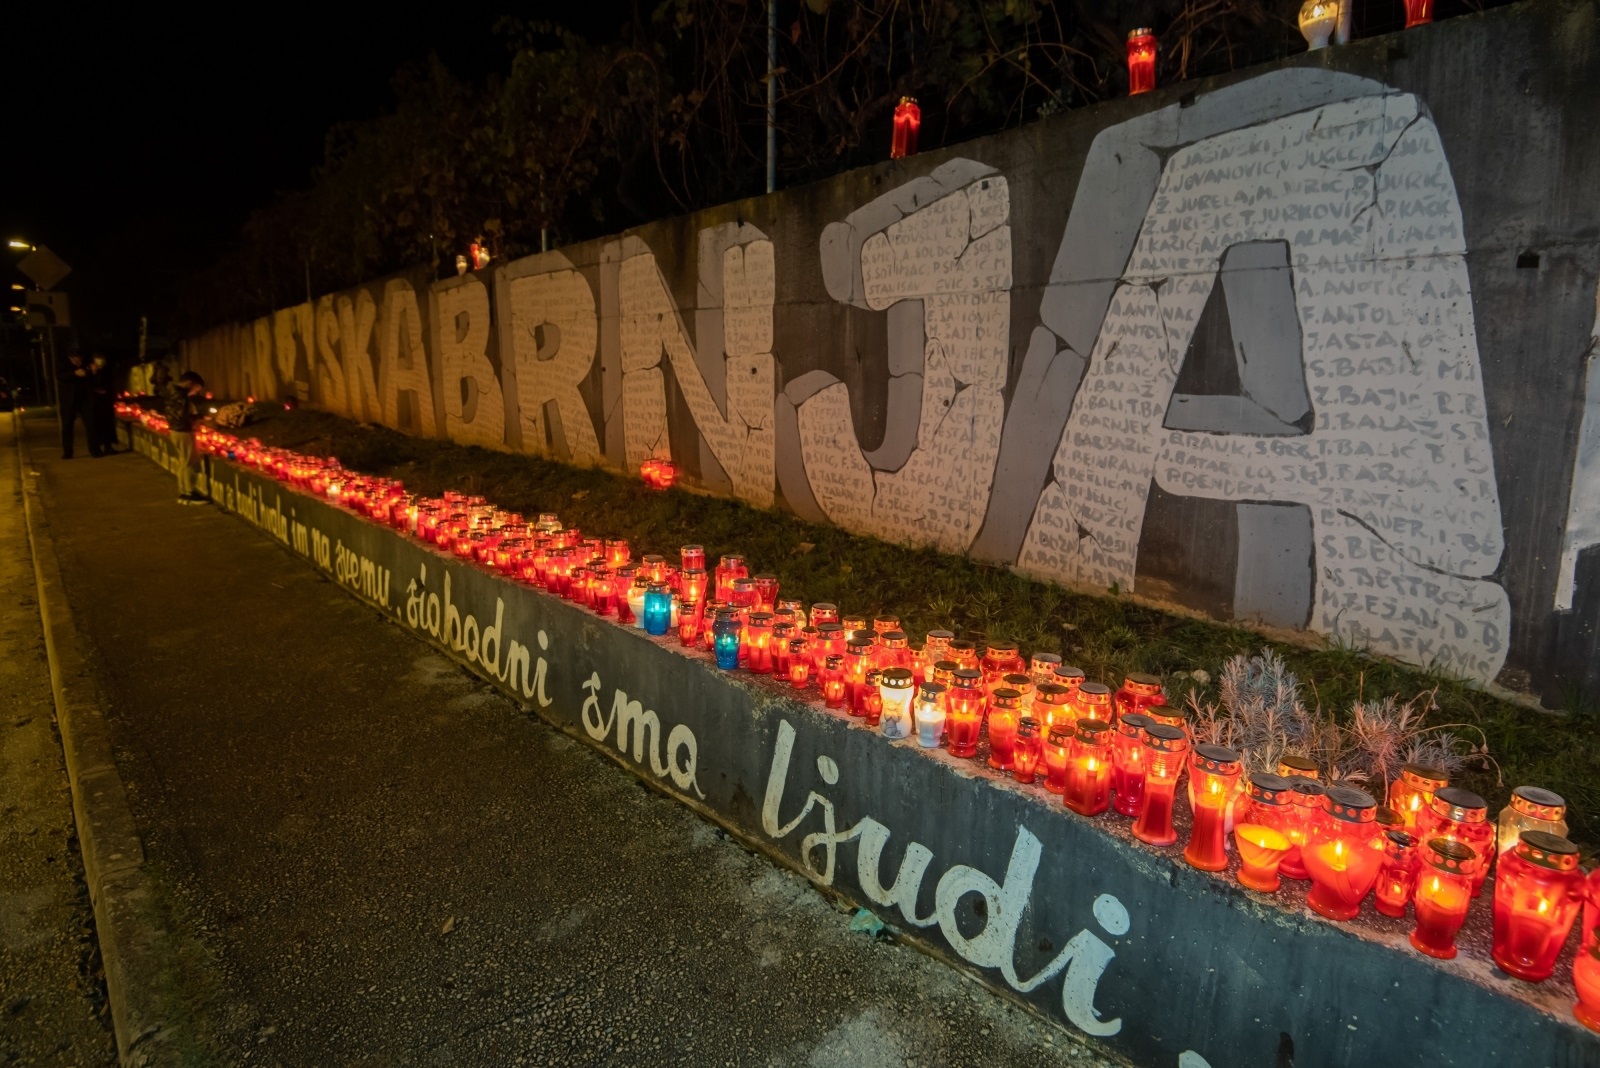 17.11.2020., Zadar - Gradjani su zapalili svijece u Vukovarskoj ulici u spomen na Dan sjecanja na zrtvu Vukovara i Skabrnje u Domovinskom ratu. 
Photo: Dino Stanin/PIXSELL